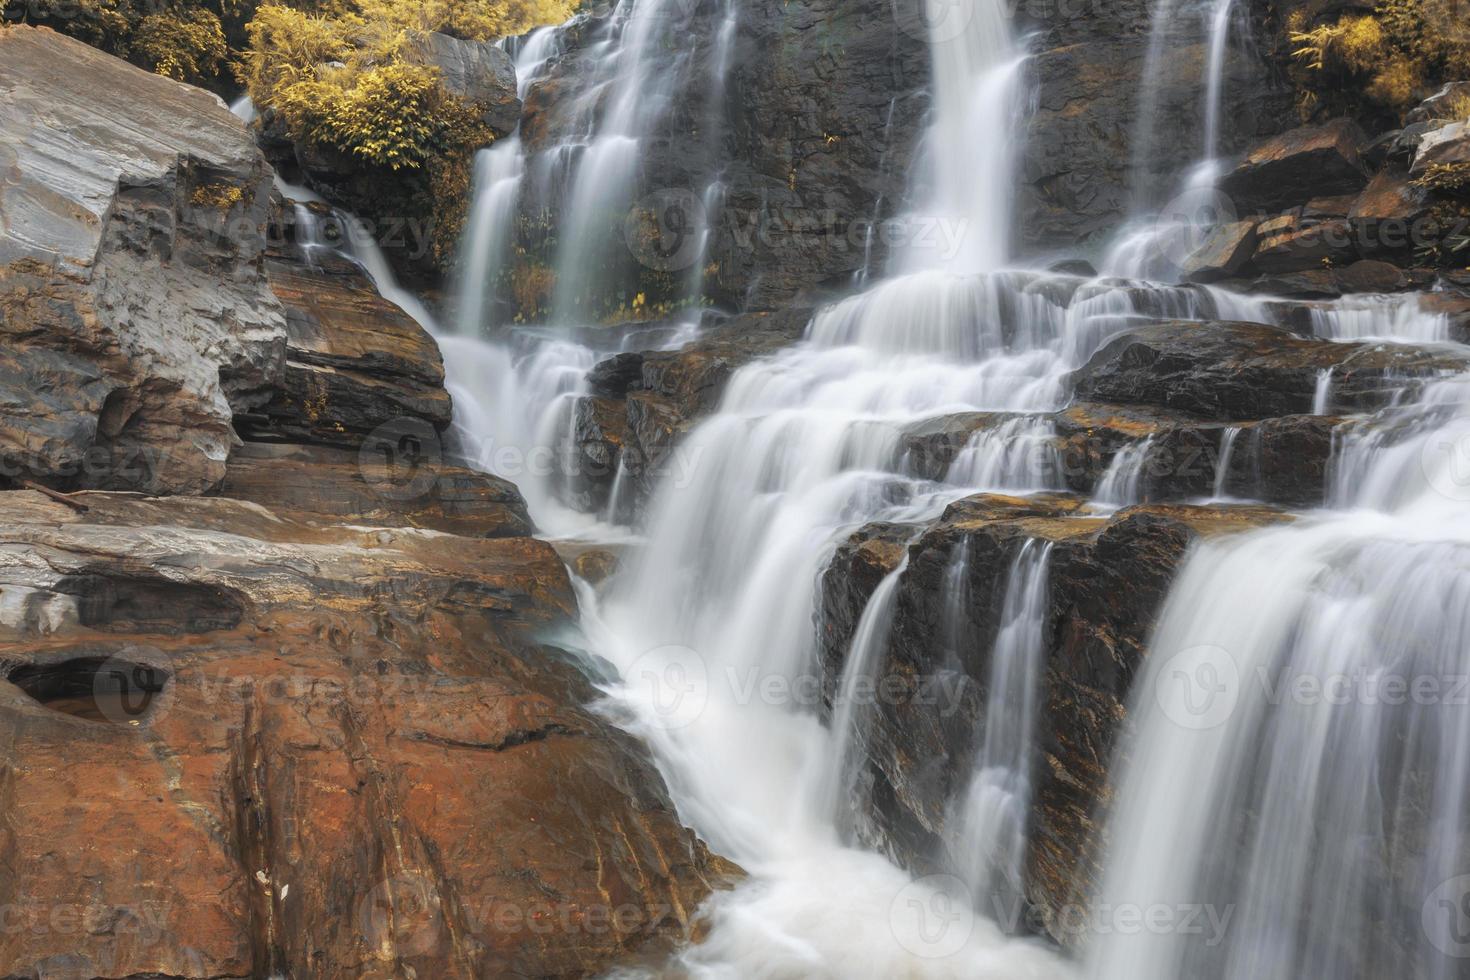 Mae-klang waterfall in Doi Inthanon national park, Chiang Mai photo